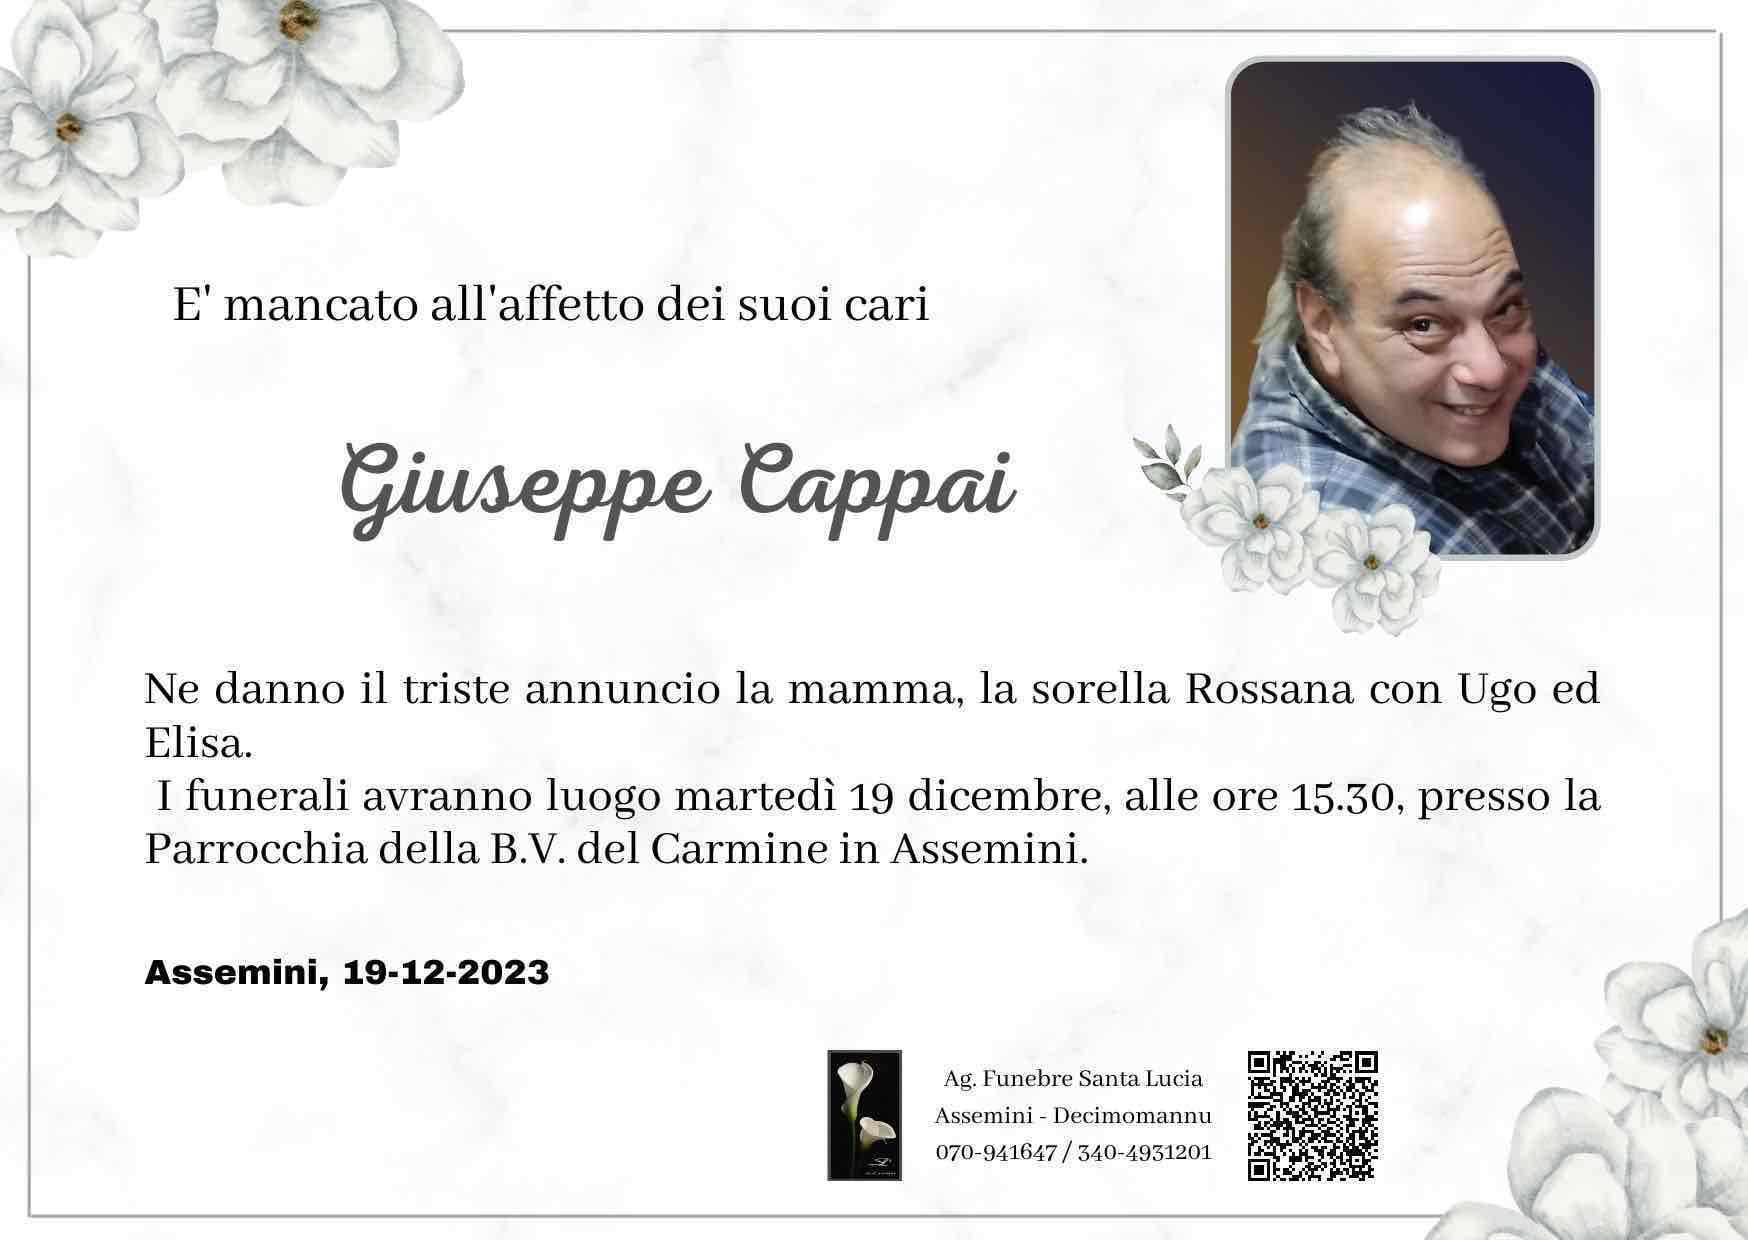 Giuseppe Cappai